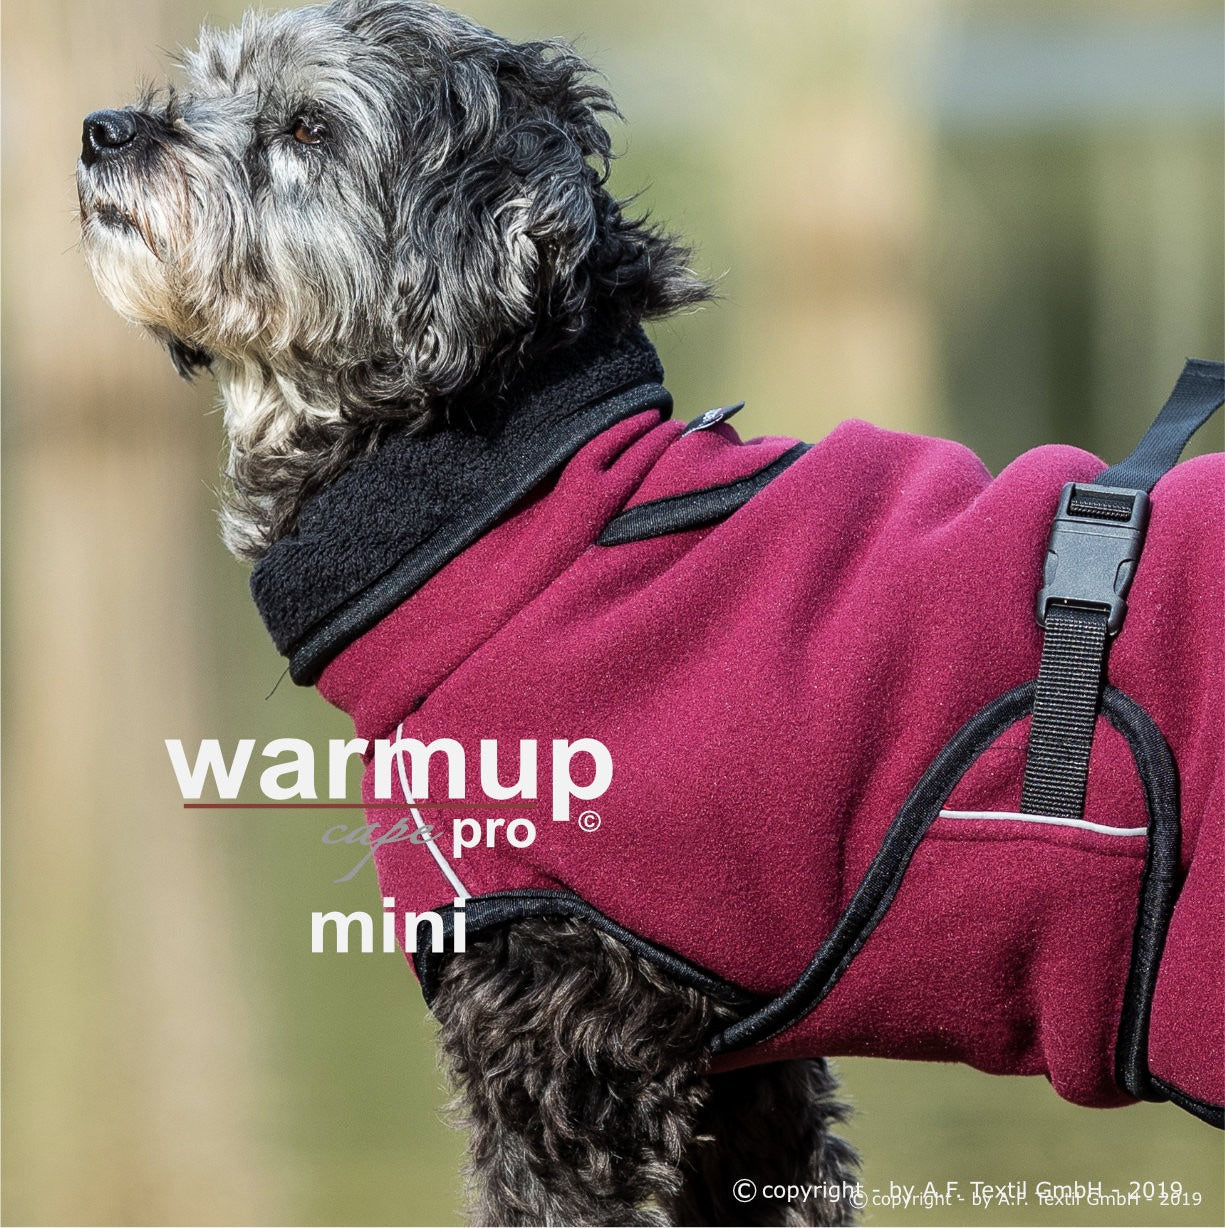 warmup cape pro mini 2